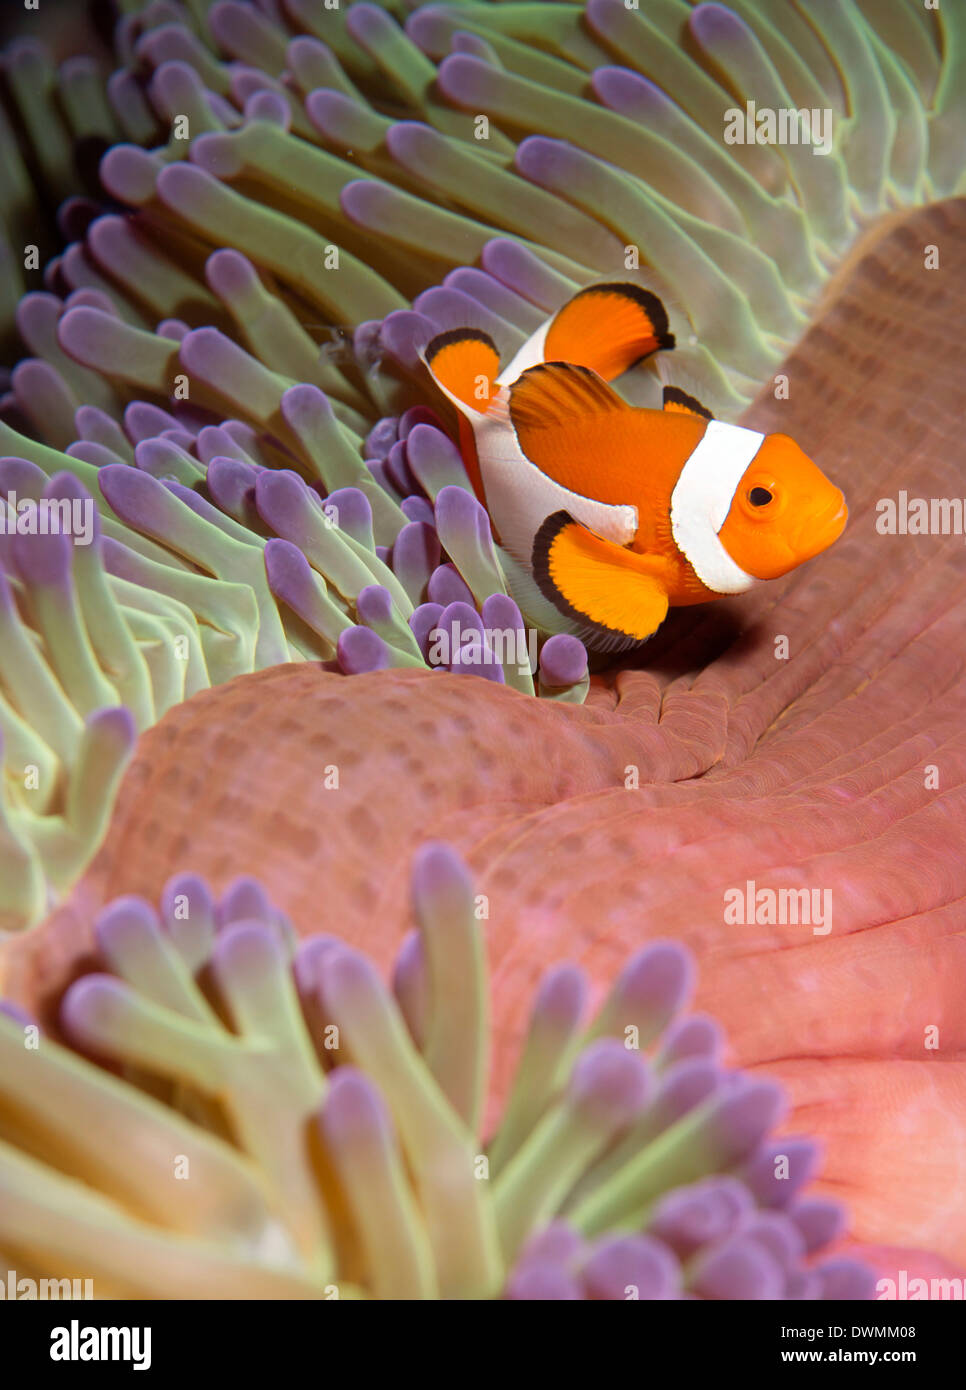 False clown anenomefish (Amphiprion ocellaris) dans les tentacules de son hôte anenome, Mer de Célèbes, Sabah, Malaisie Banque D'Images